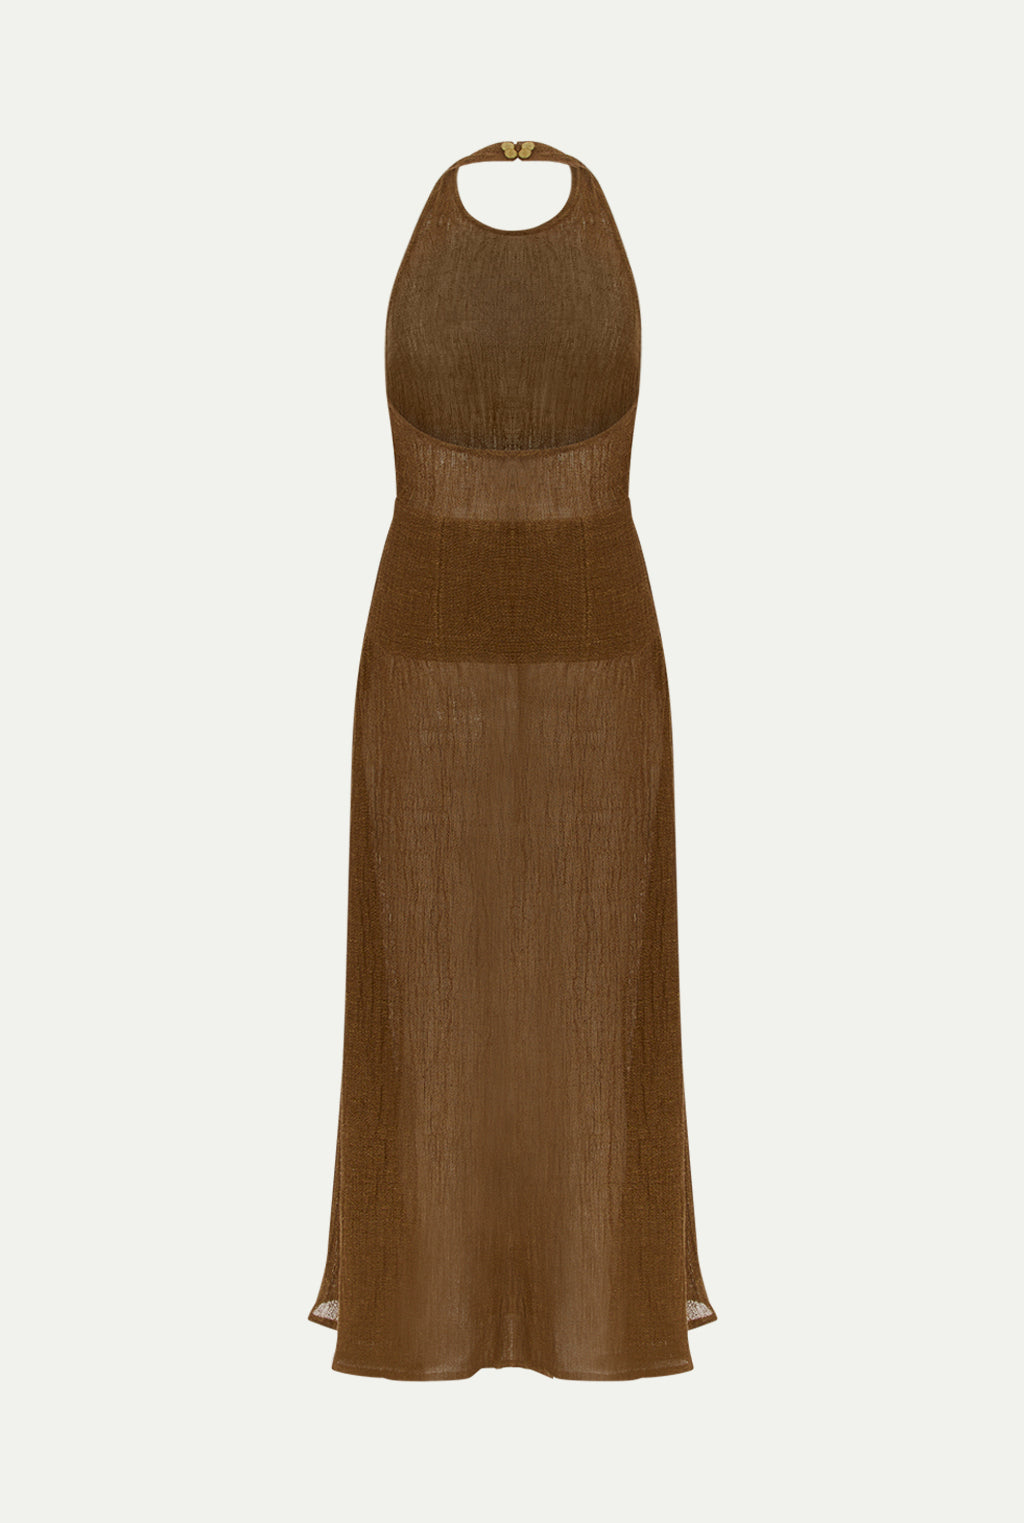 DAIRUT linen dress